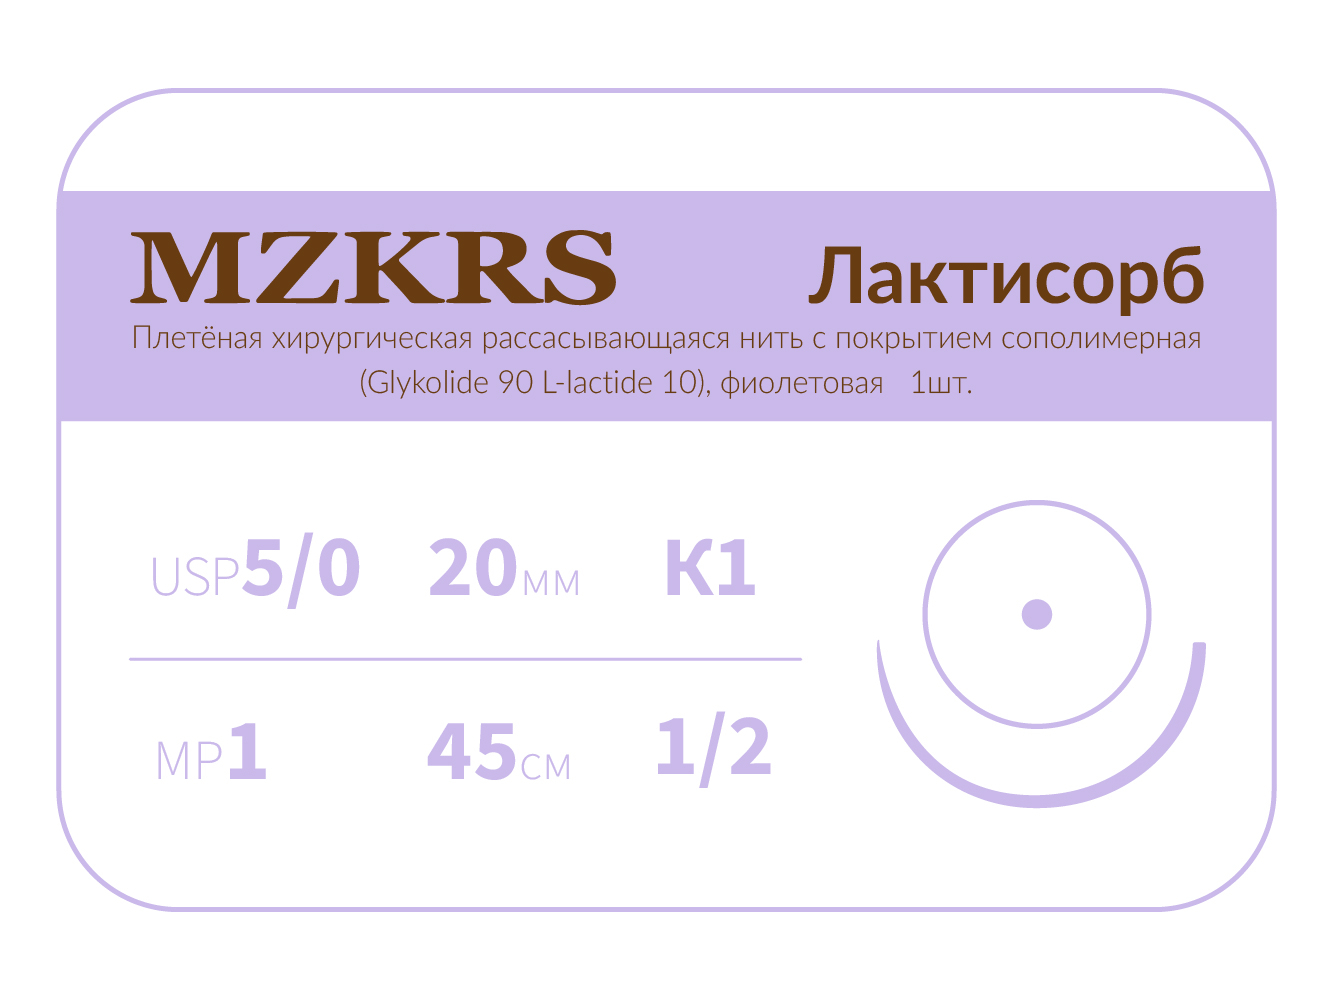 2012К1-Premium-5/0 (1)45 ПГЛ ЛАКТИСОРБ хирургическая нить сополимерная, MZKRS (Россия)